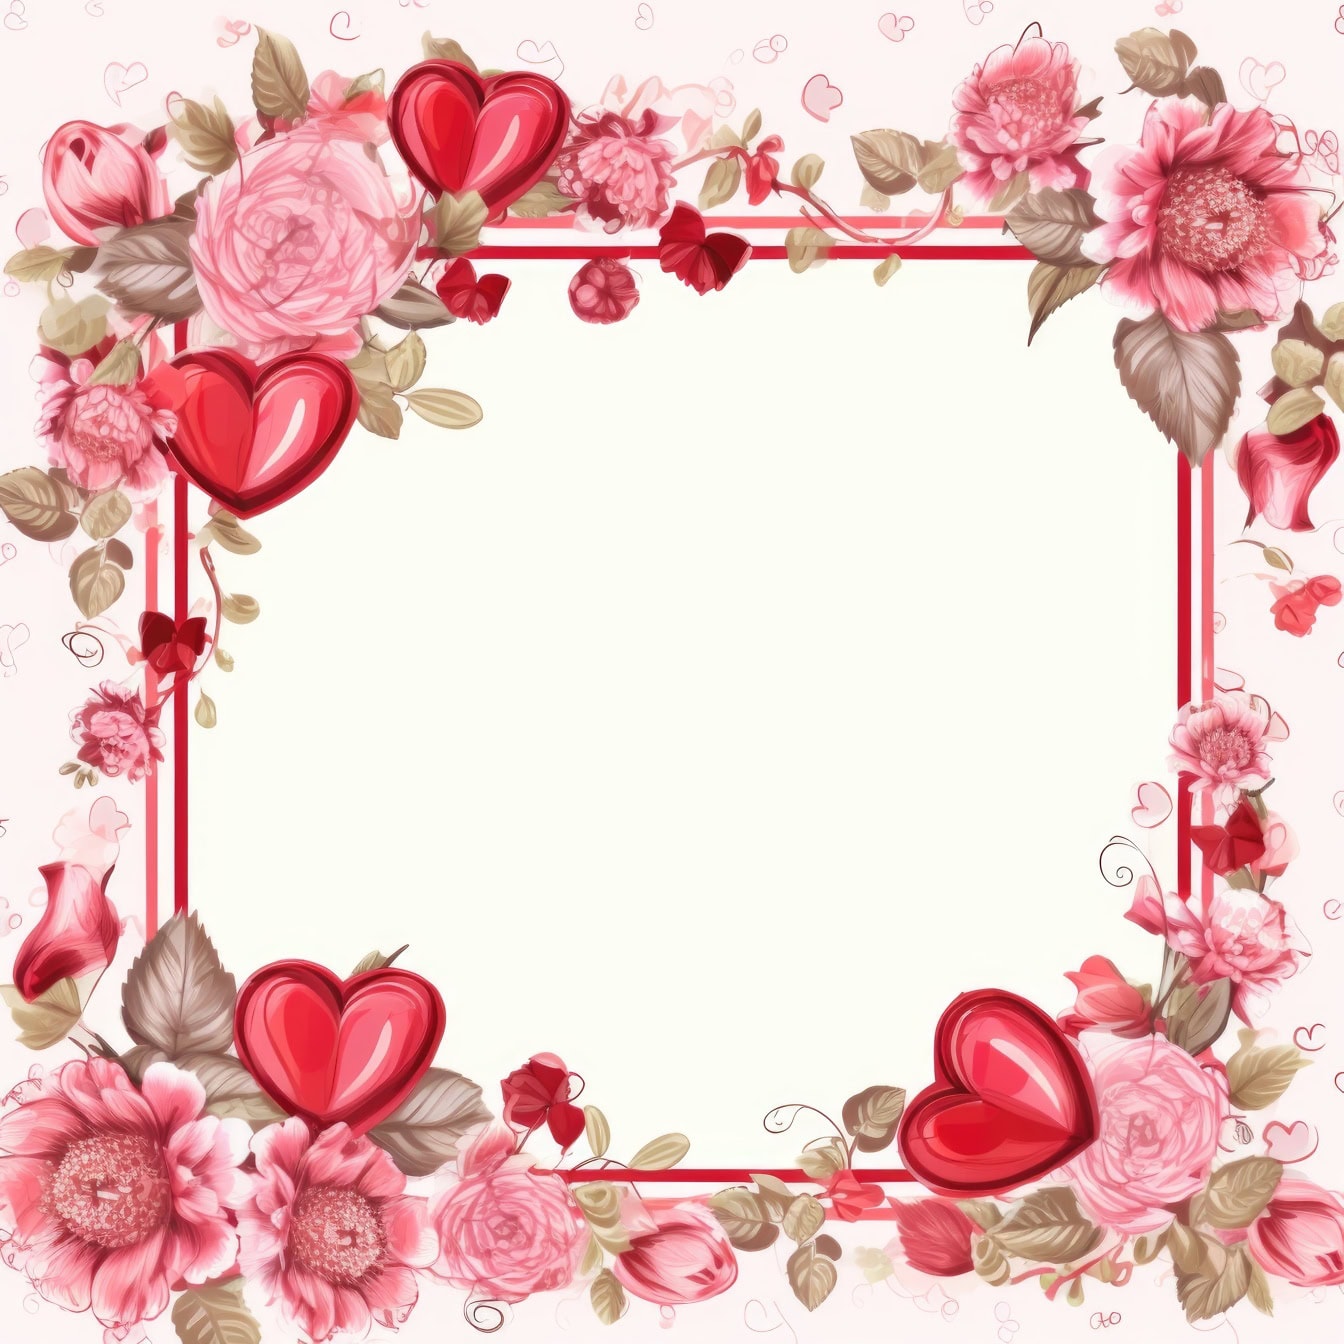 Tarjeta de felicitación romántica con marco cuadrado con flores y corazones rosas